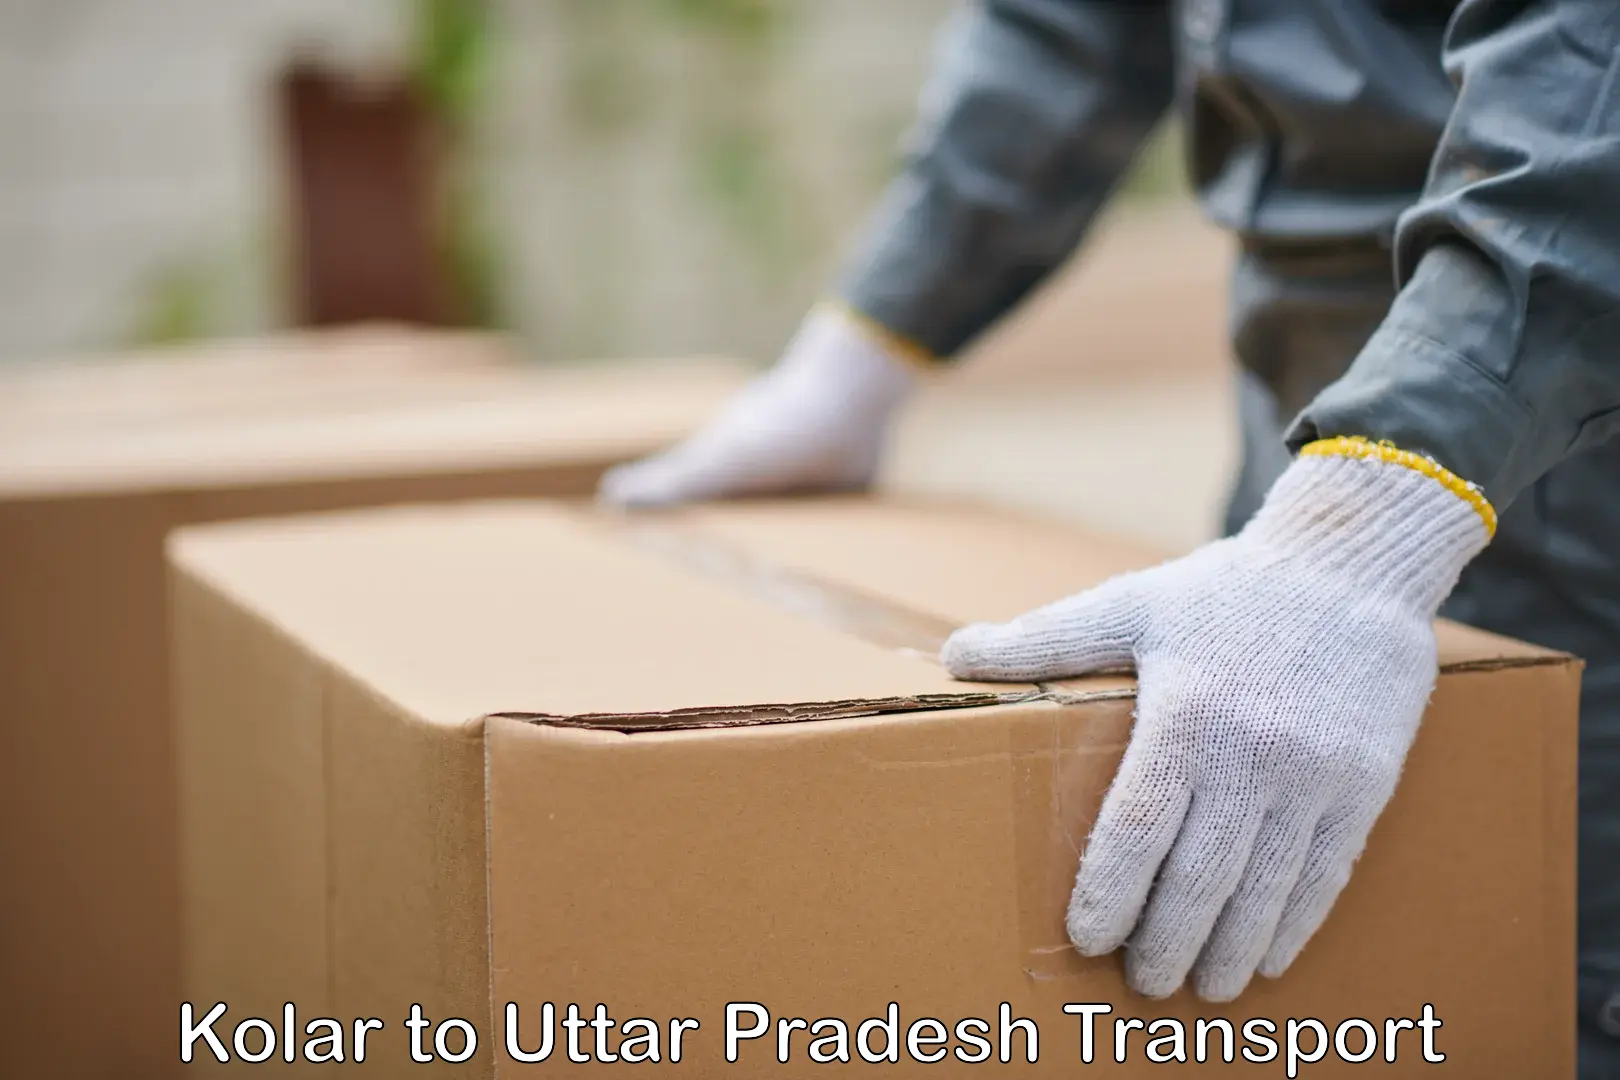 Daily parcel service transport Kolar to Ayodhya